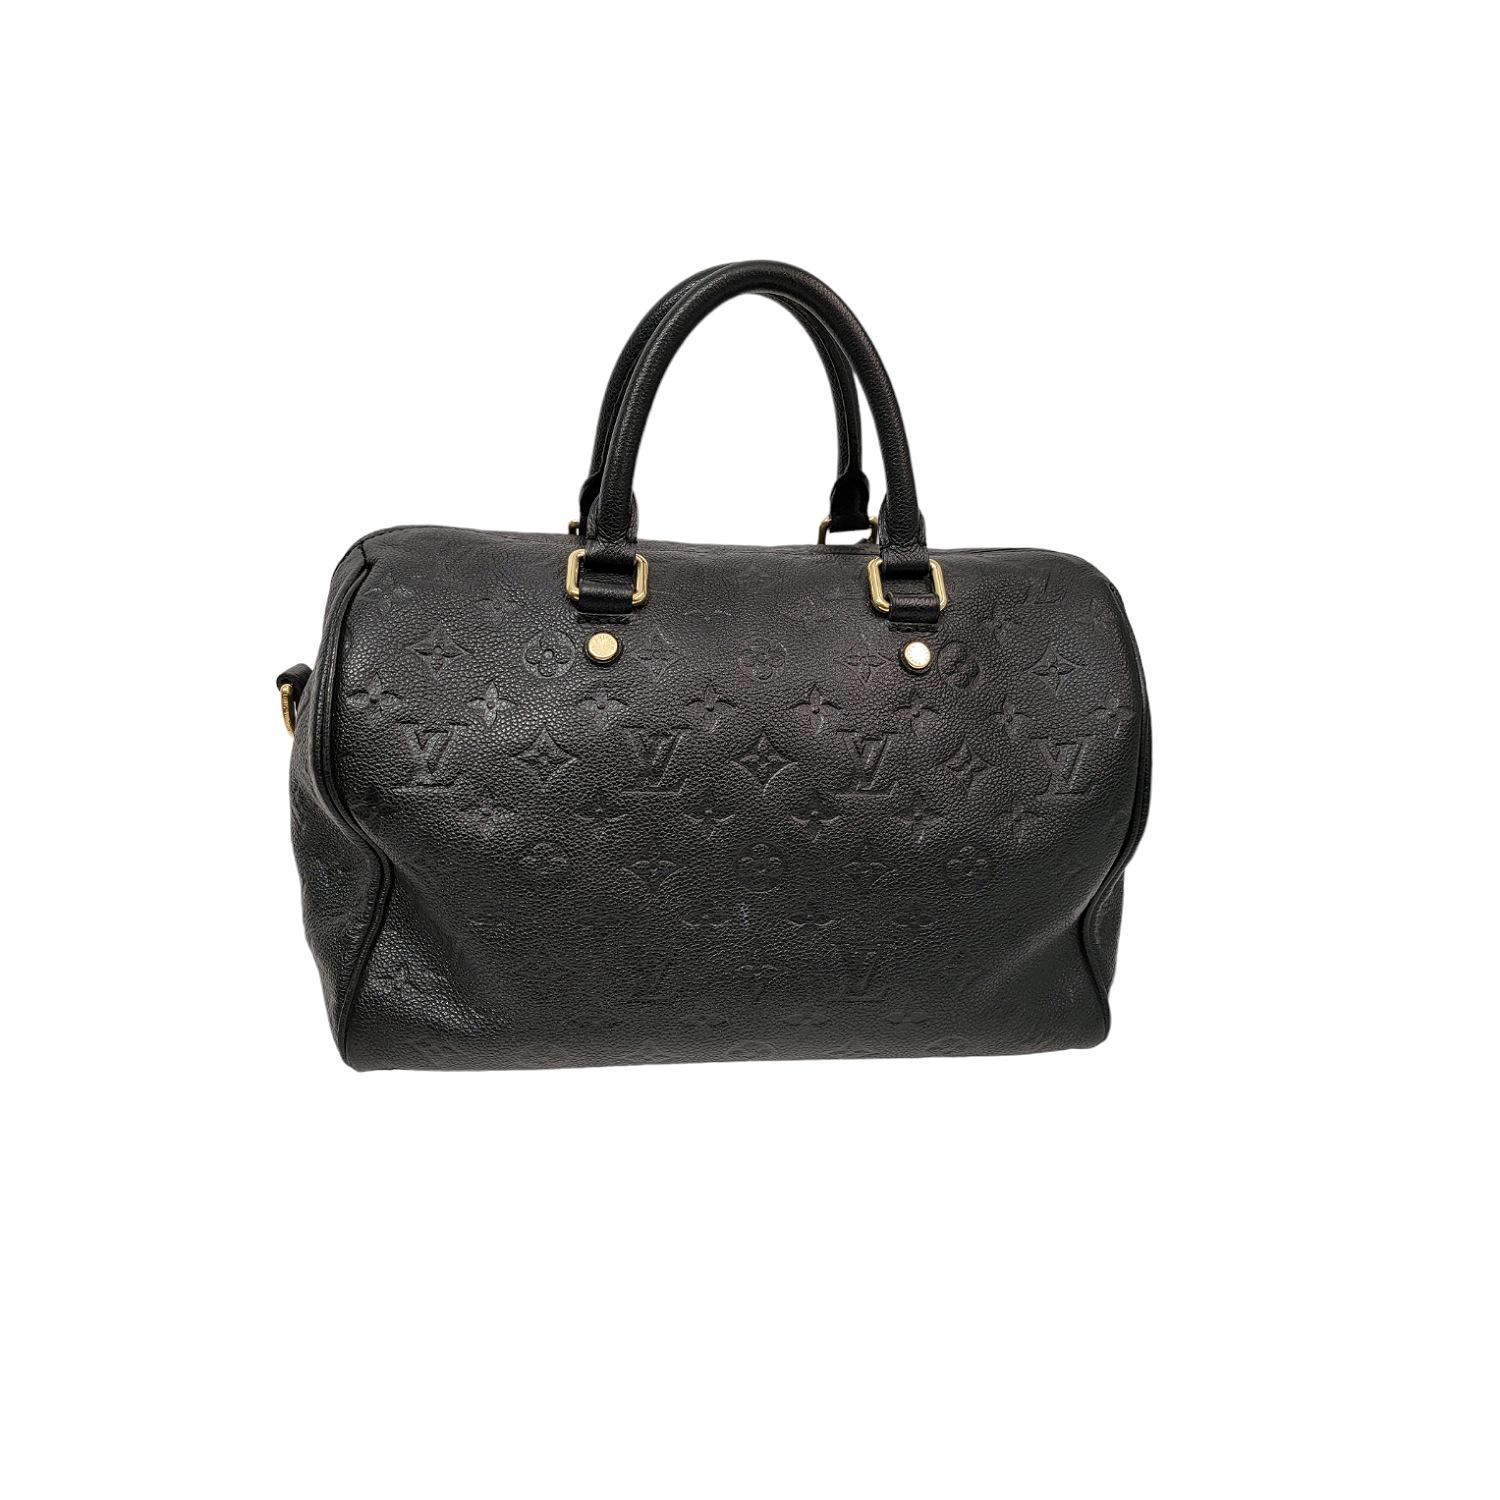 Louis Vuitton Monogram Empreinte Speedy Bandouliere 30 Bag In Good Condition In Scottsdale, AZ